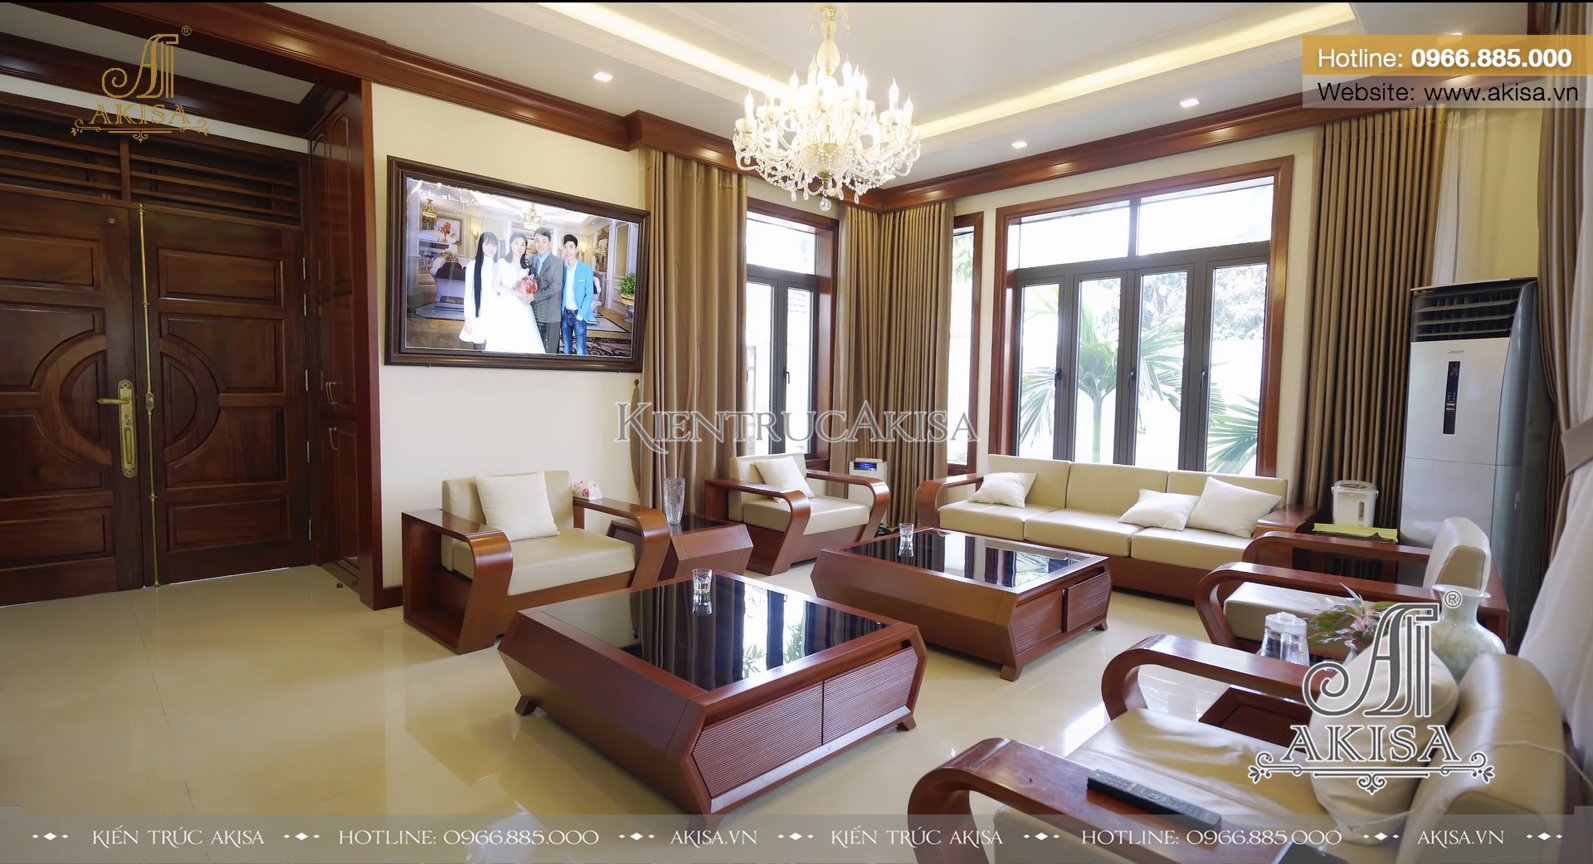 Hoàn thiện nội thất biệt thự hiện đại 2 tầng tại Hưng Yên TC21048-NT